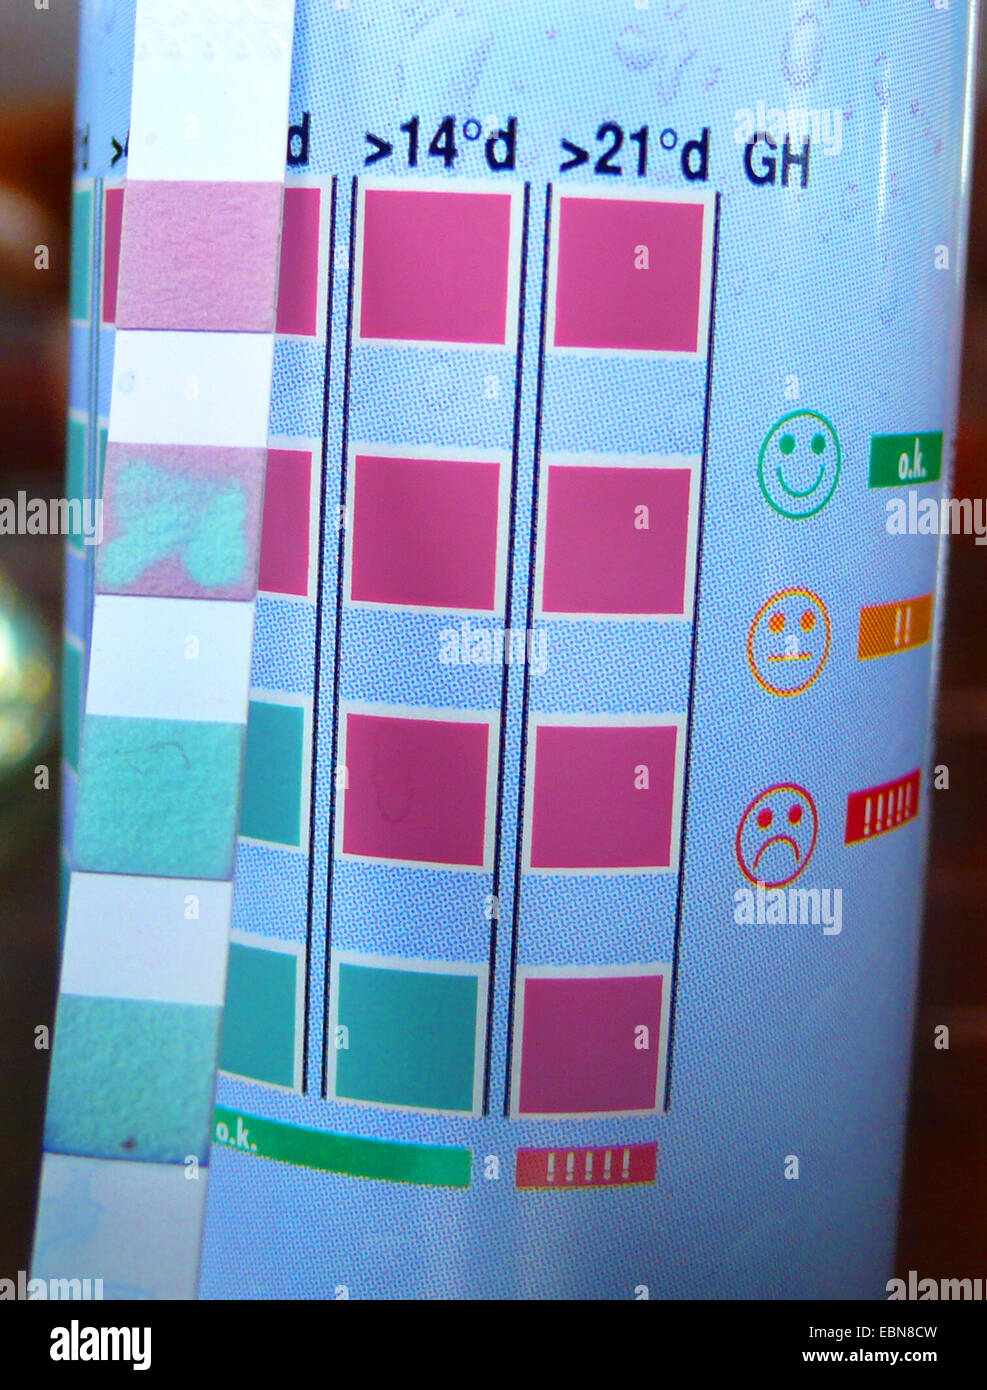 Bande de couleur pour le contrôle de la qualité de l'eau dans les aquariums avec échelle de référence, close-up de la section à propos de la dureté de l'eau Banque D'Images